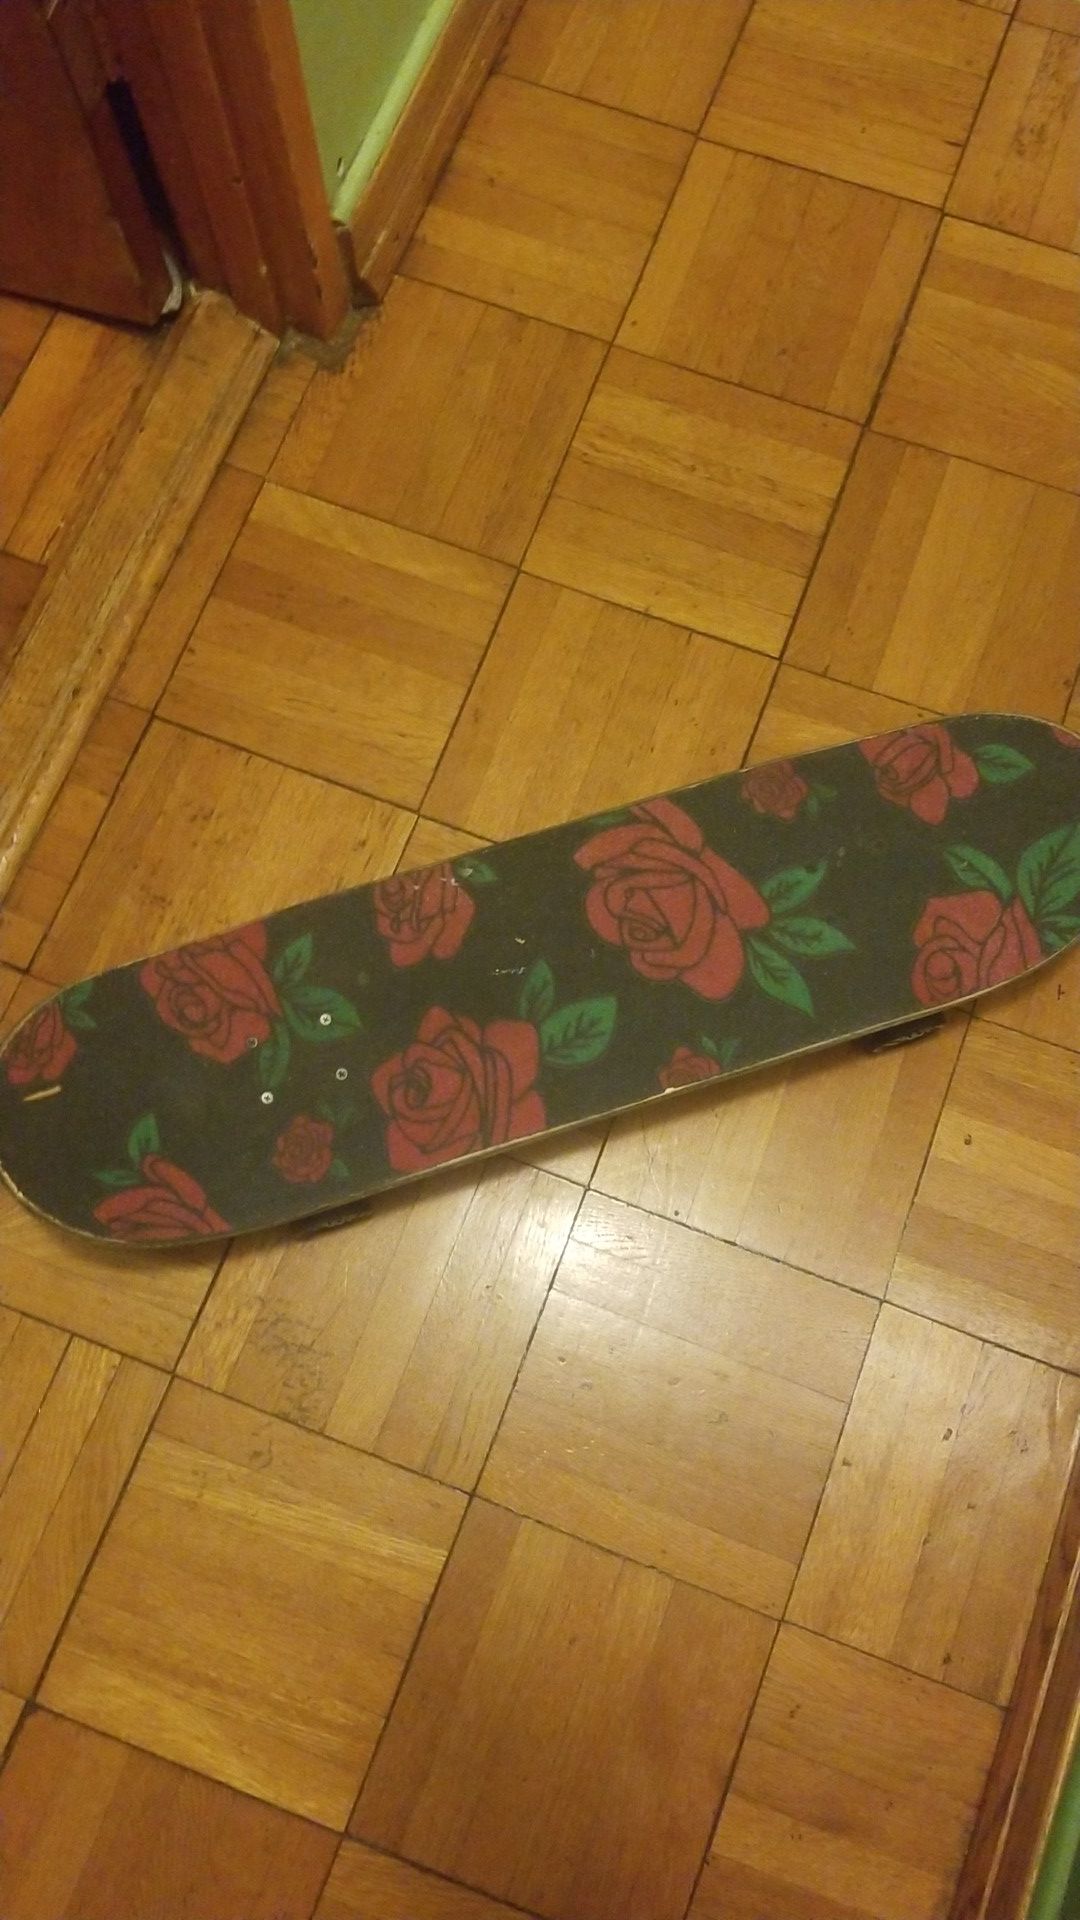 Full complete skateboard w, long board wheels